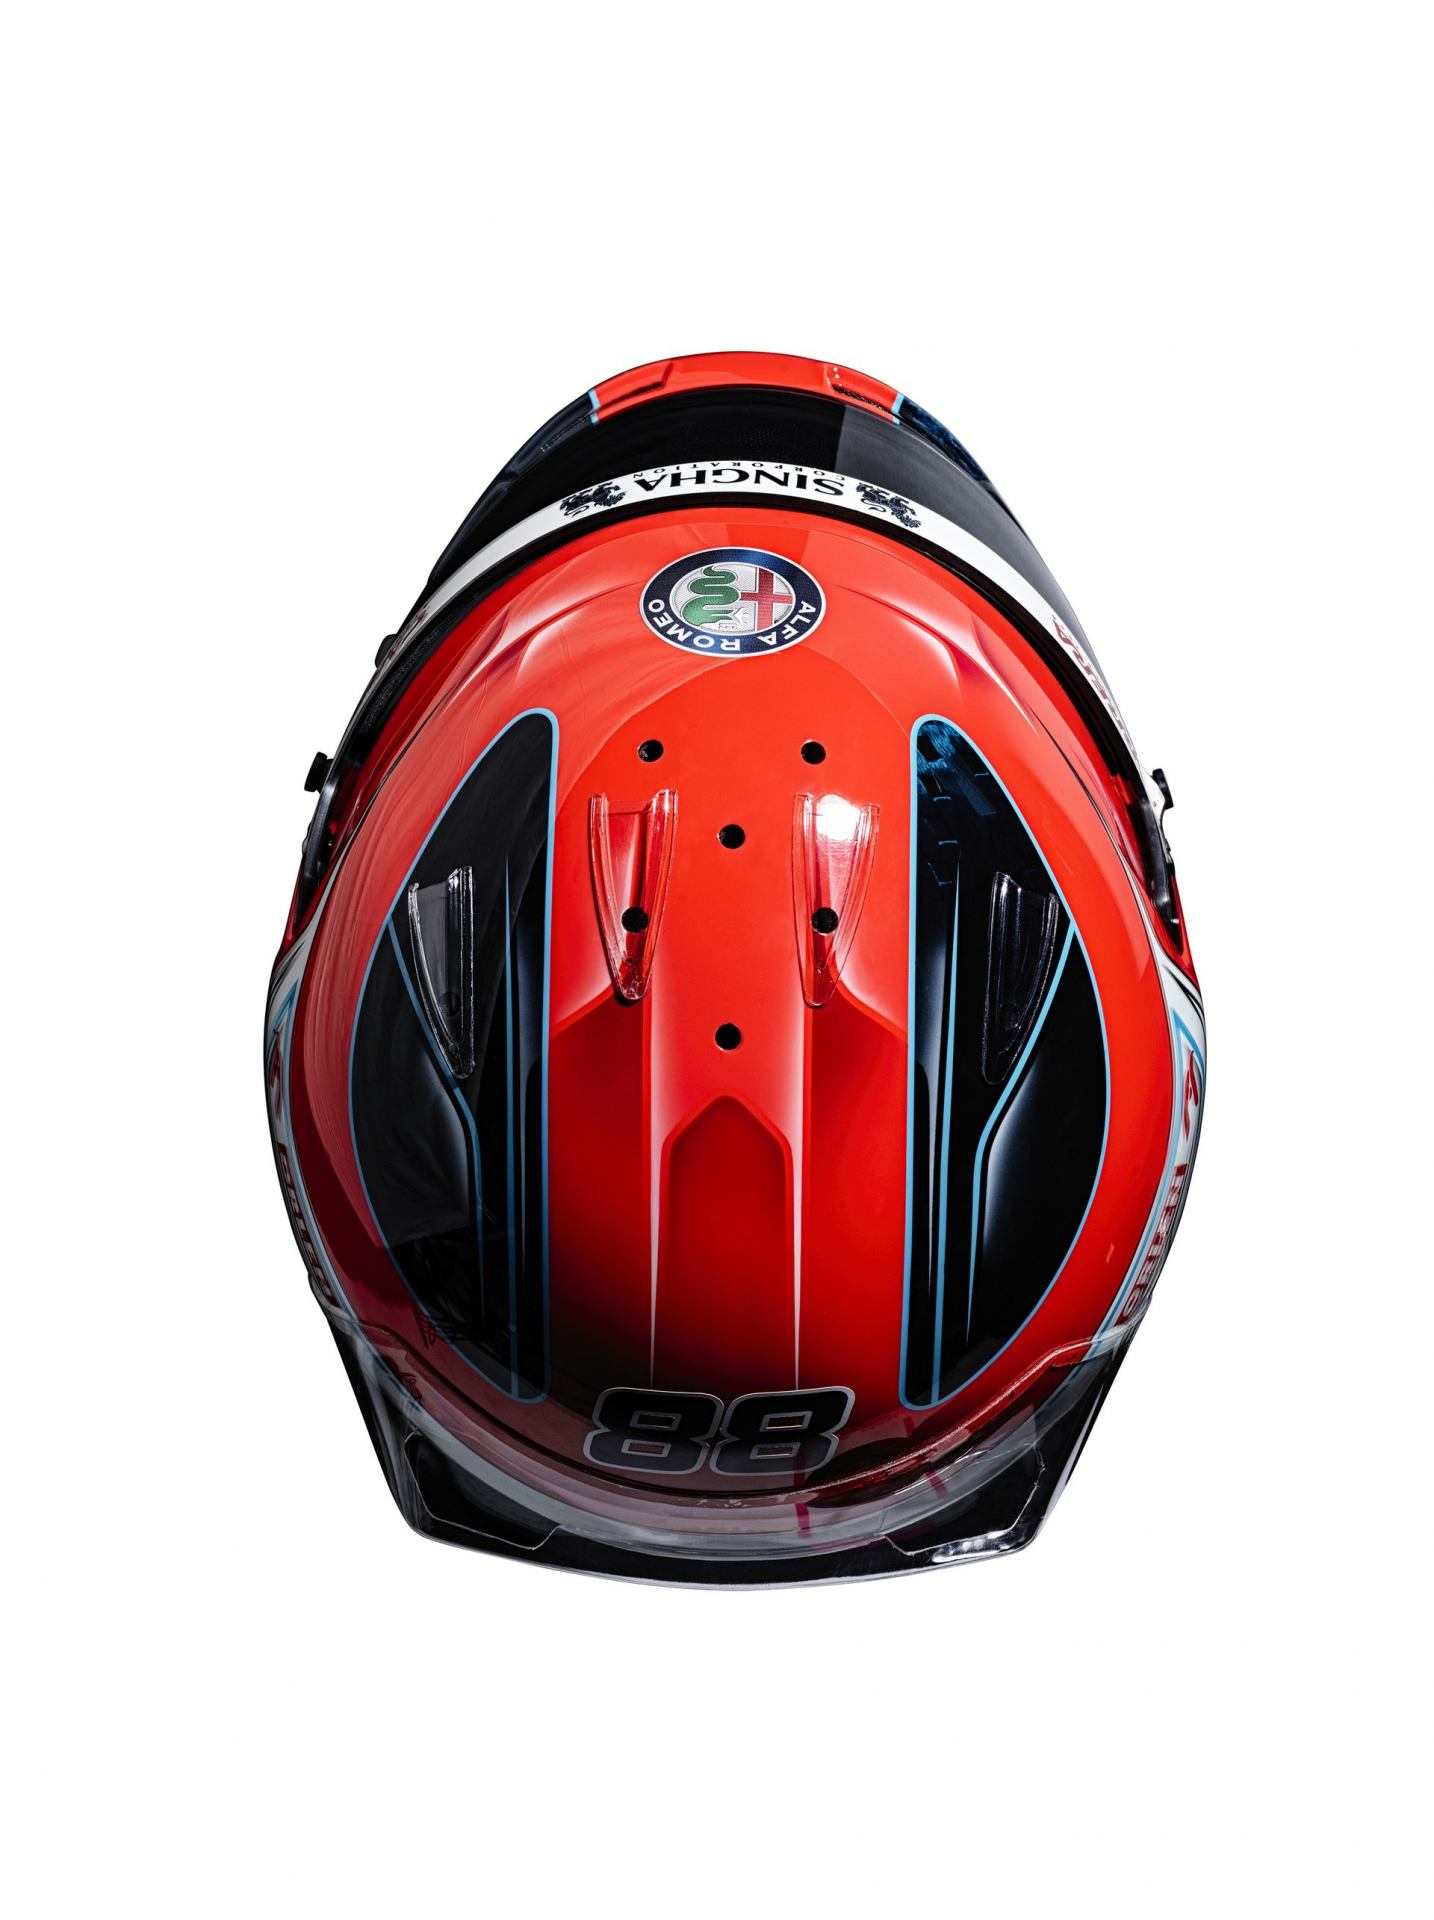 Robert-Kubica-Helmet-5